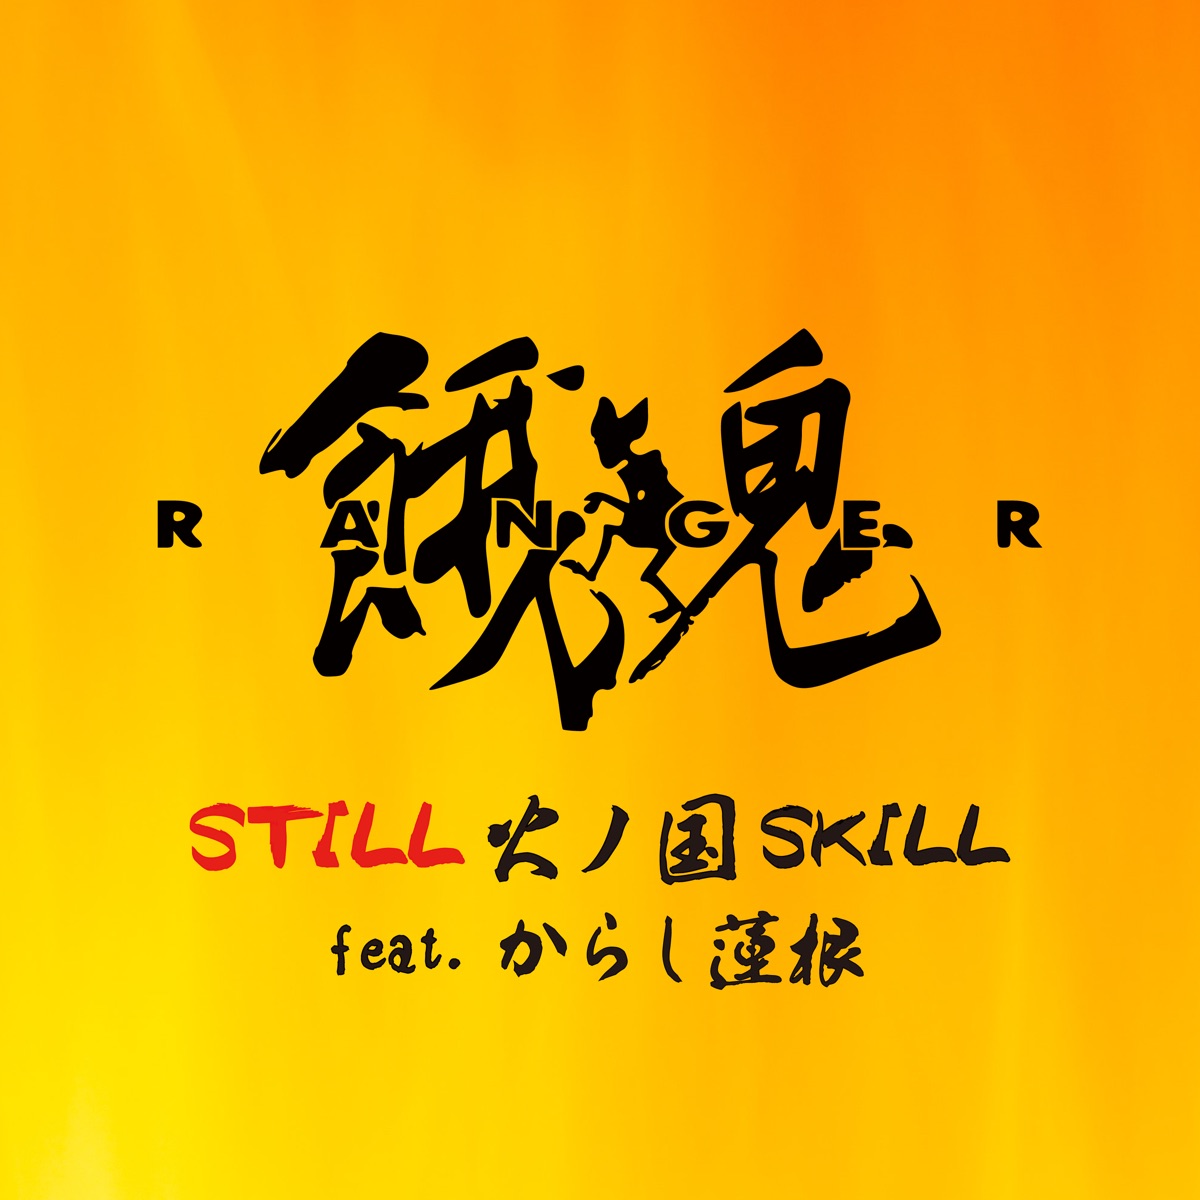 『餓鬼レンジャー - STILL 火ノ国SKILL feat. からし蓮根』収録の『STILL 火ノ国SKILL feat. からし蓮根』ジャケット